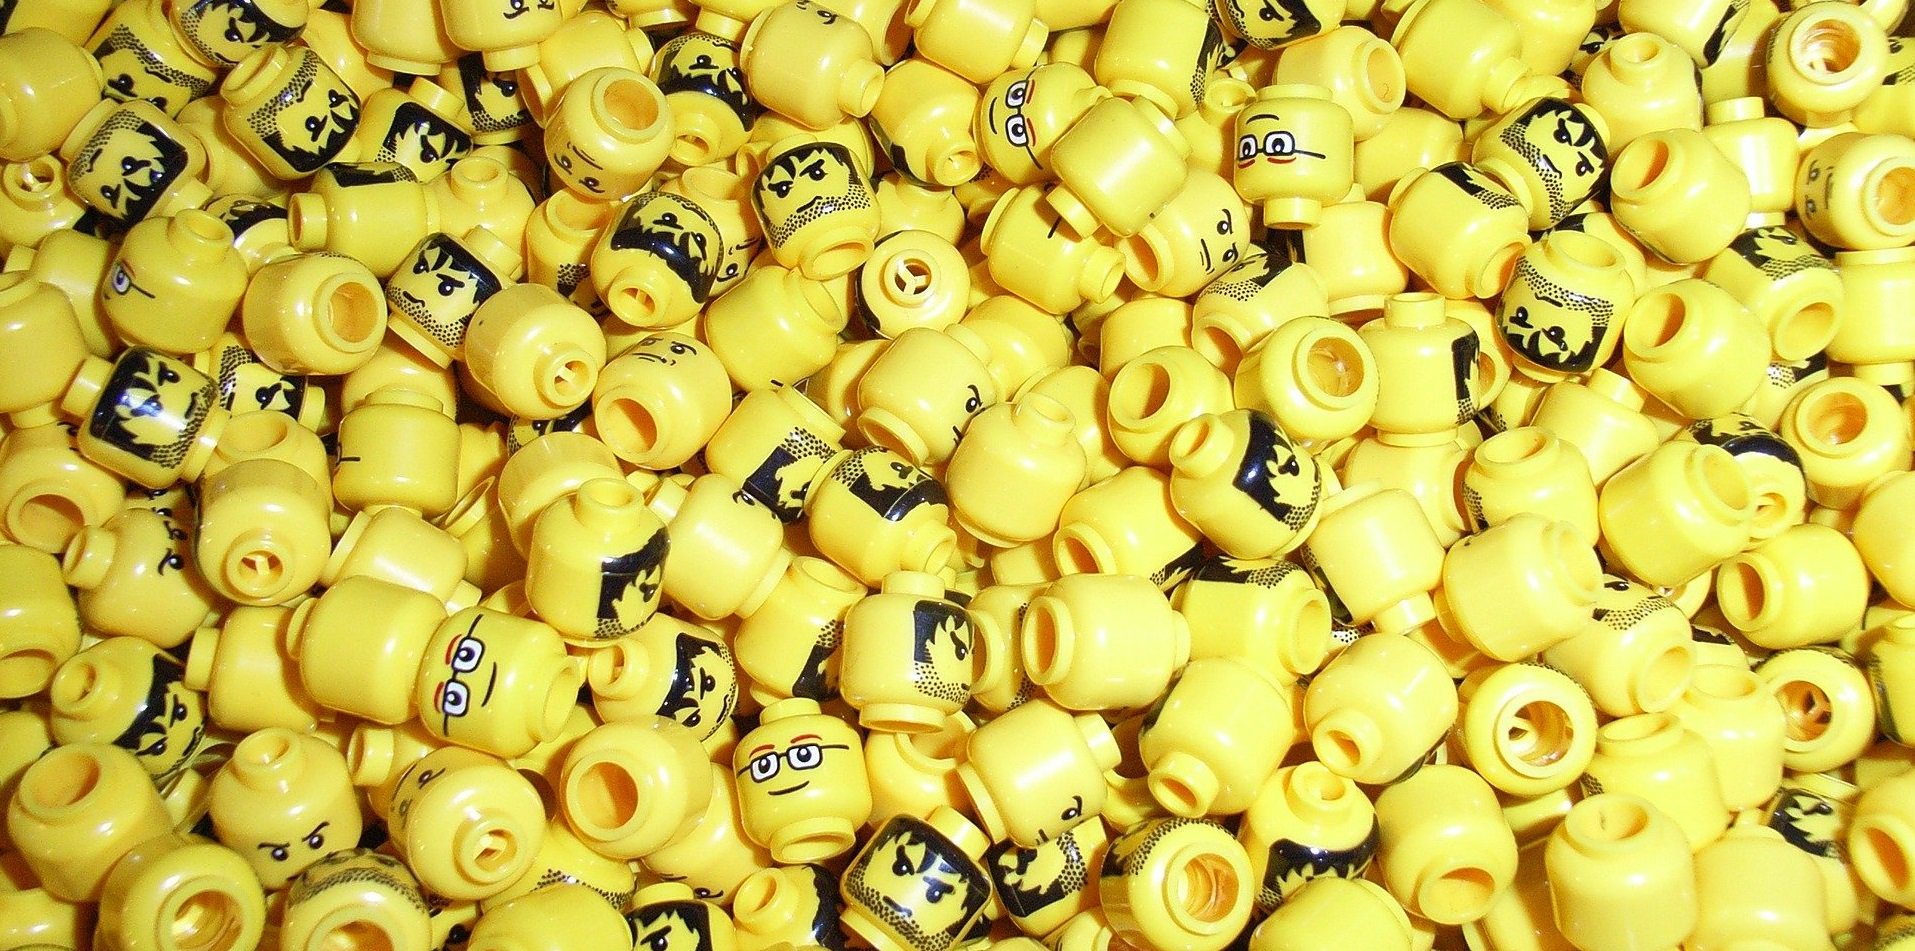 Que será, se a engolir a cabeça de um homem de LEGO?